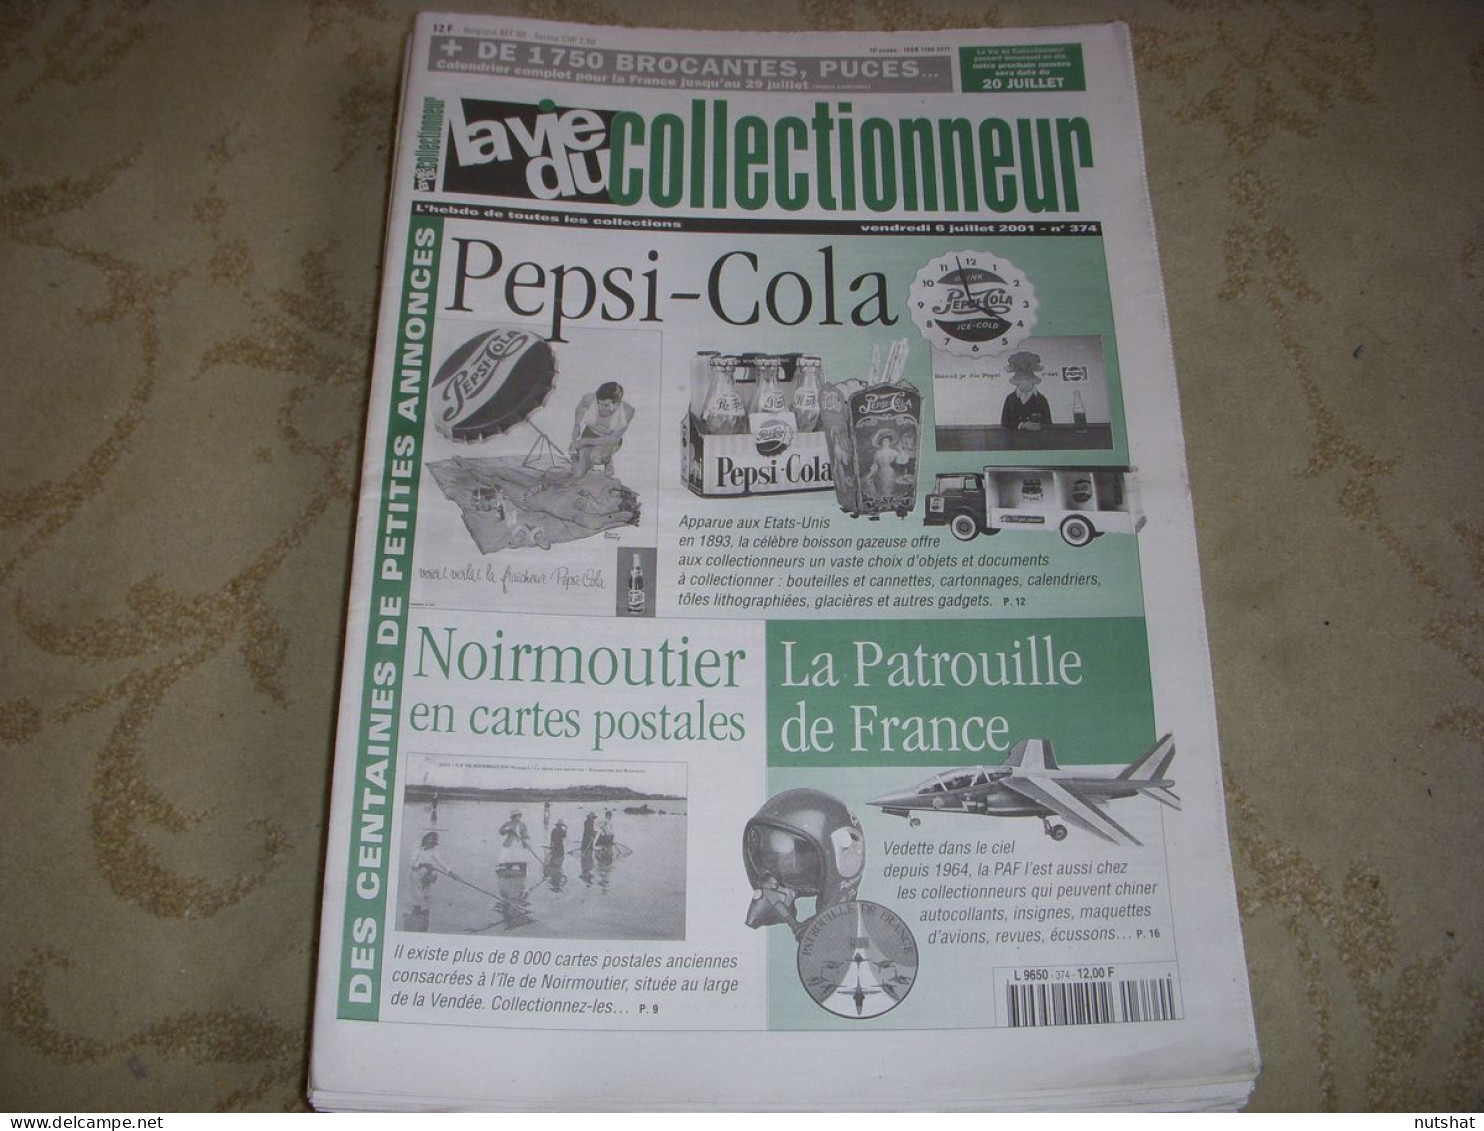 LVC VIE Du COLLECTIONNEUR 374 06.07.2001 PEPSI COLA AVION PATROUILLE FRANCE  - Brocantes & Collections